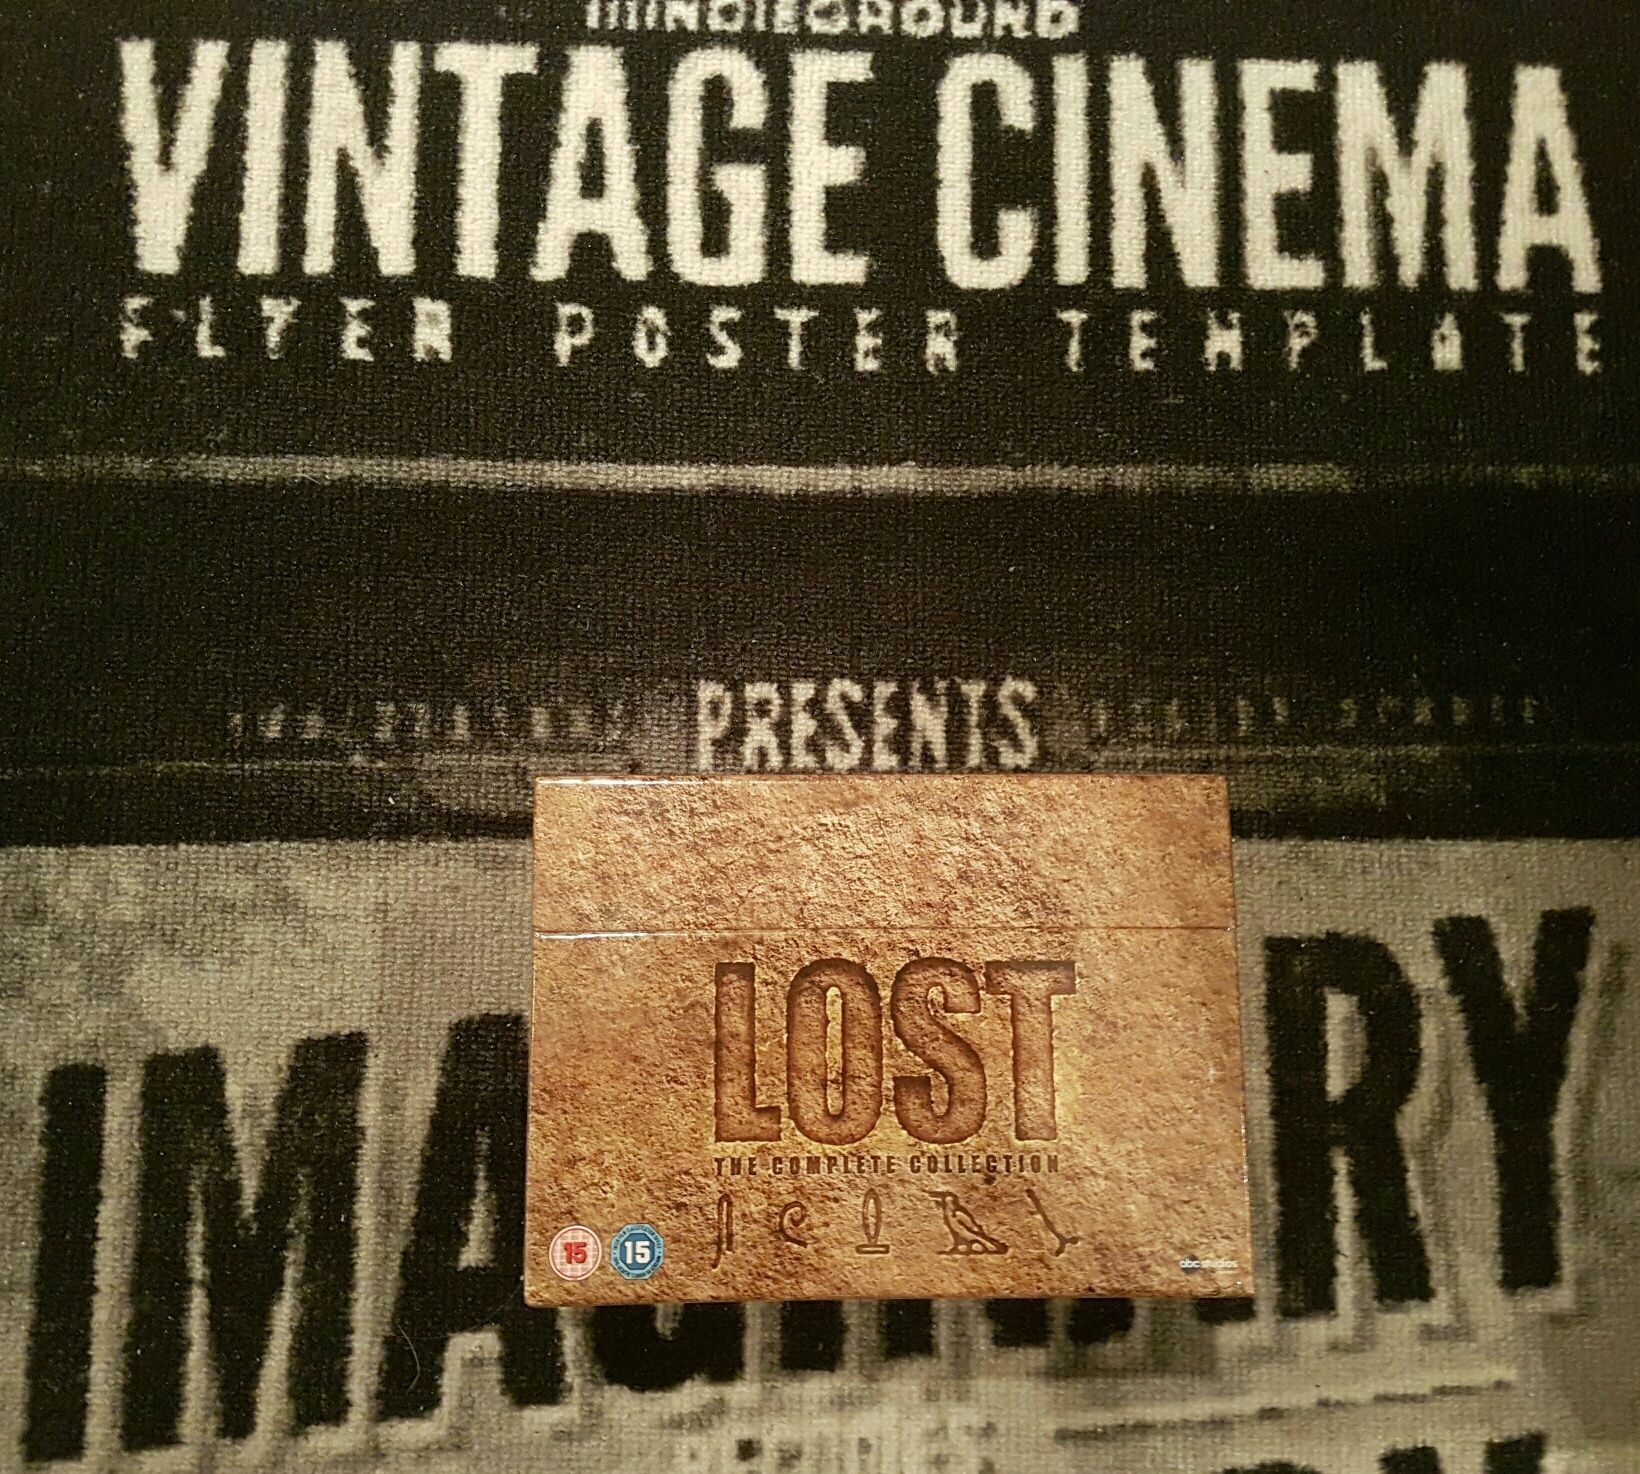 FILM SERIAL Lost : Season 1-6 [37 DVD] BoxSet Original